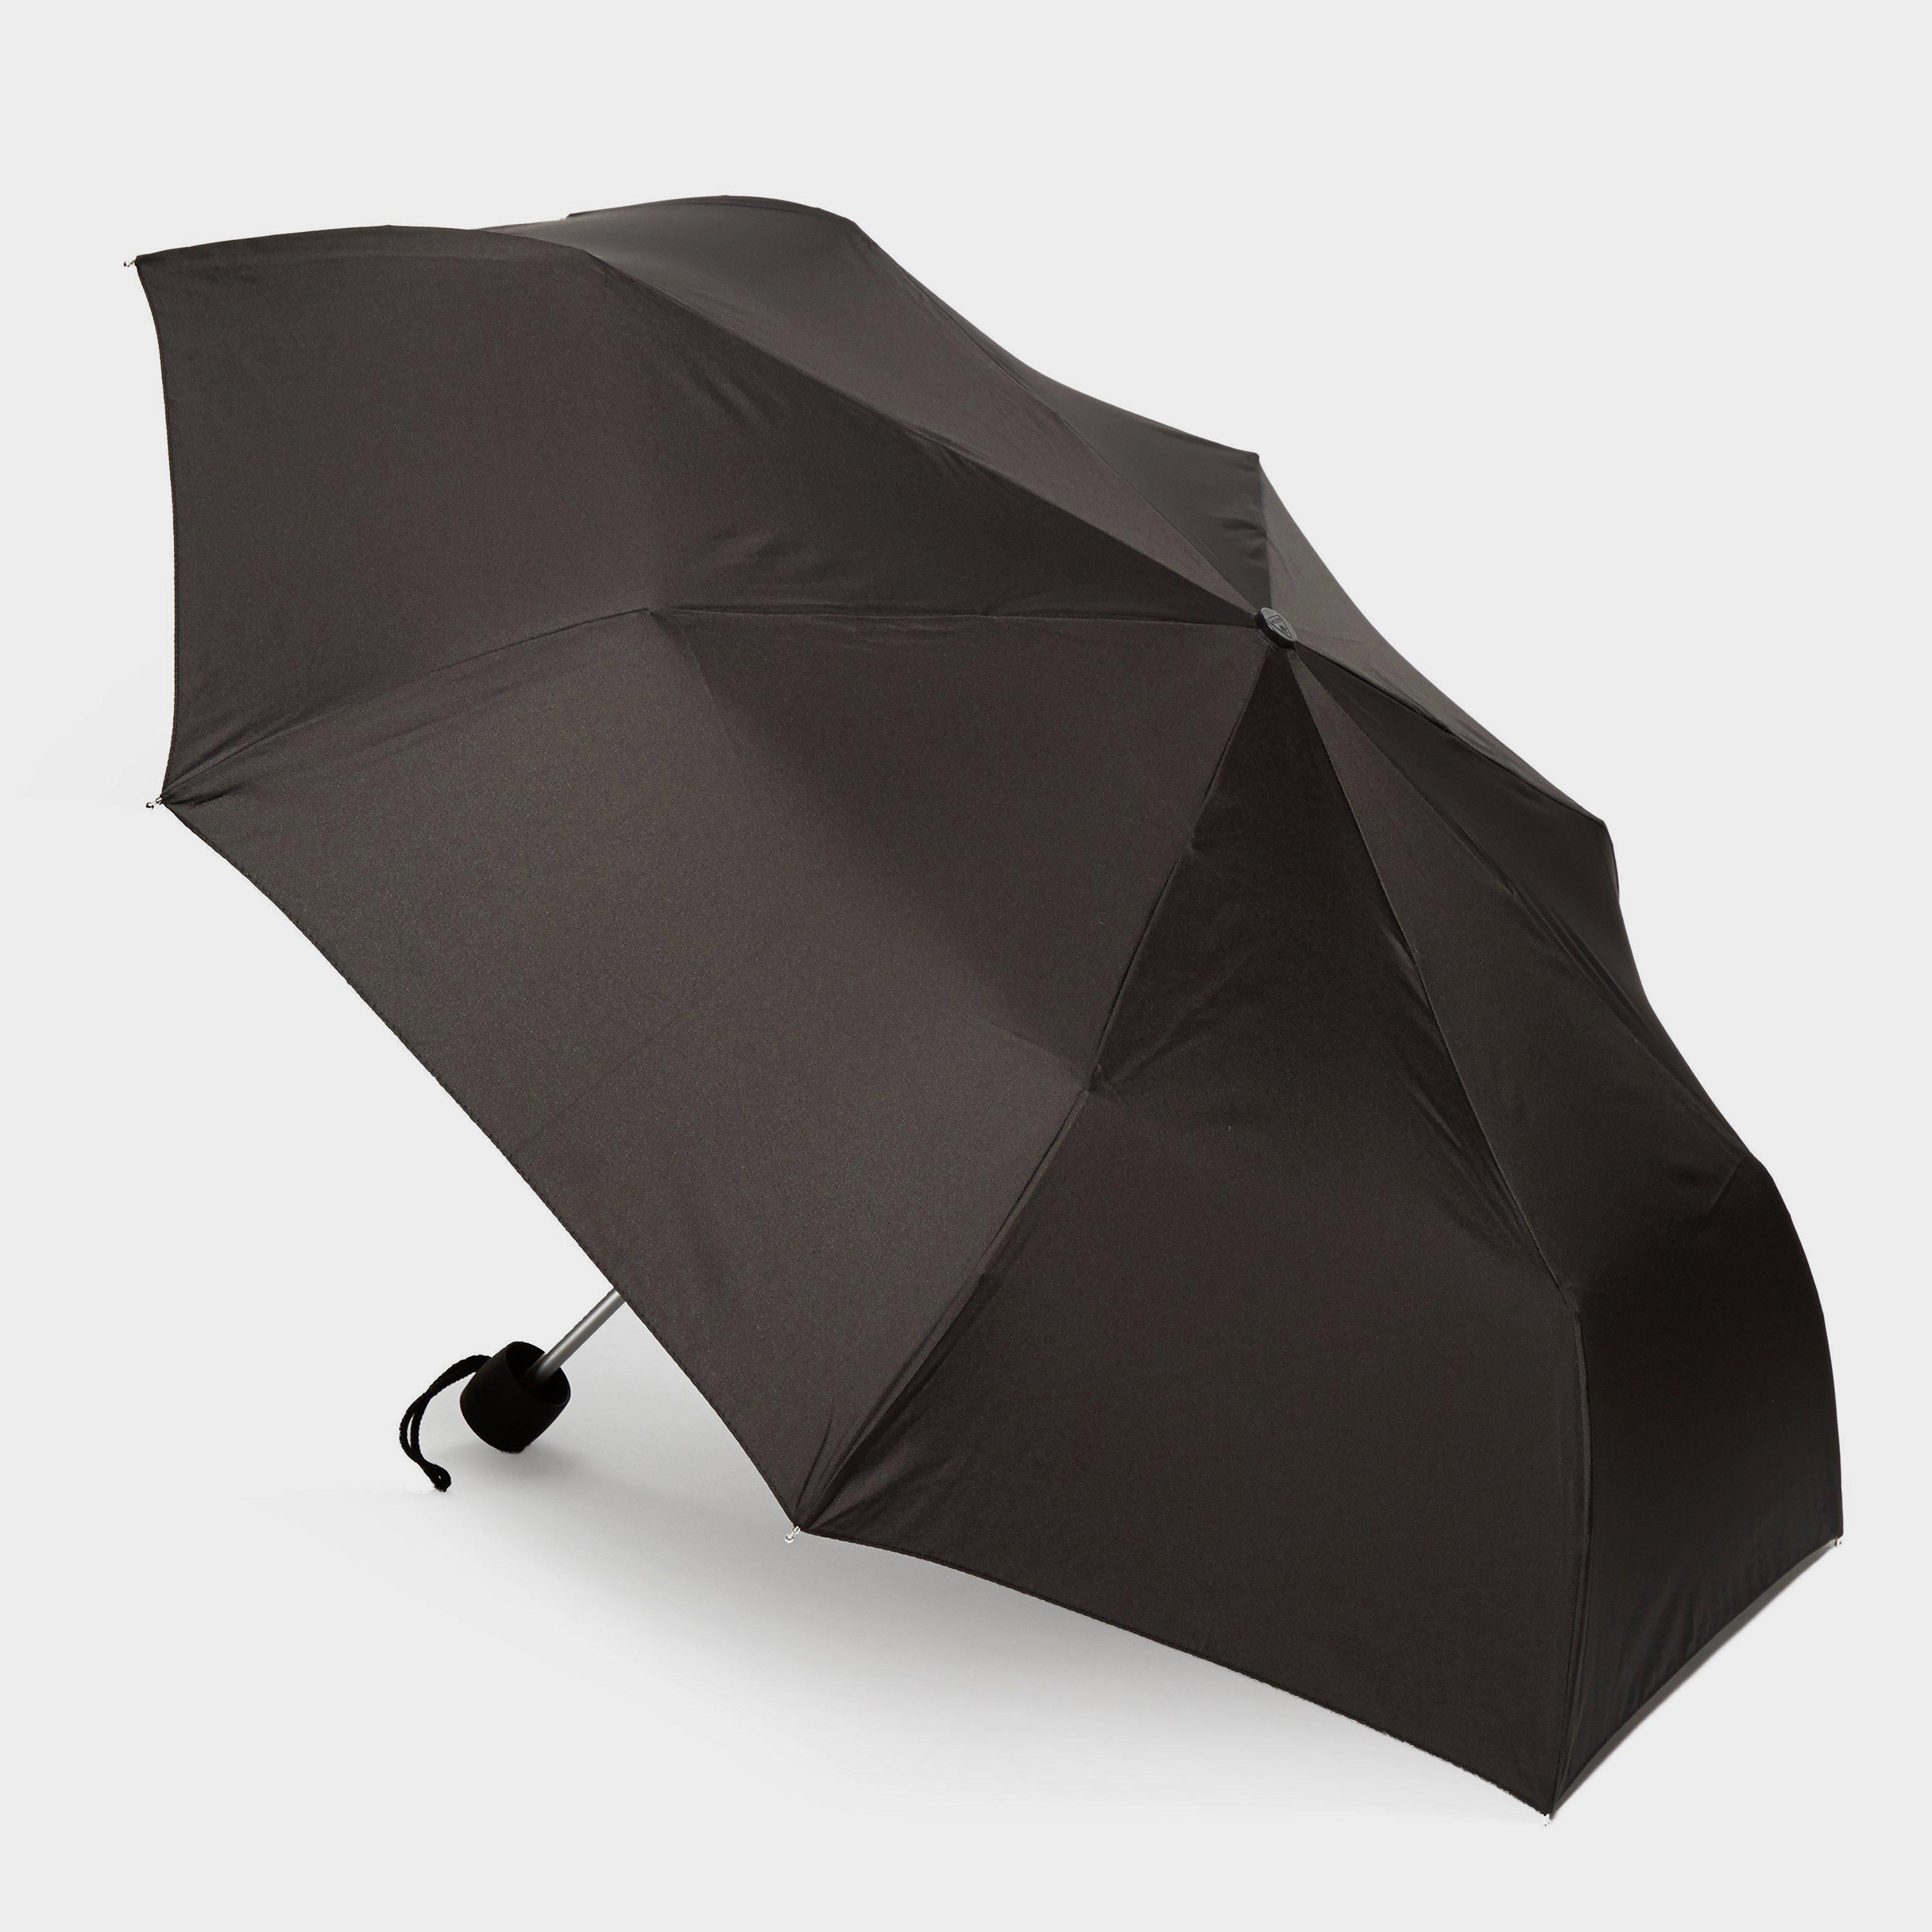 Fulton Minilite 1 Umbrella - Black/blk  Black/blk